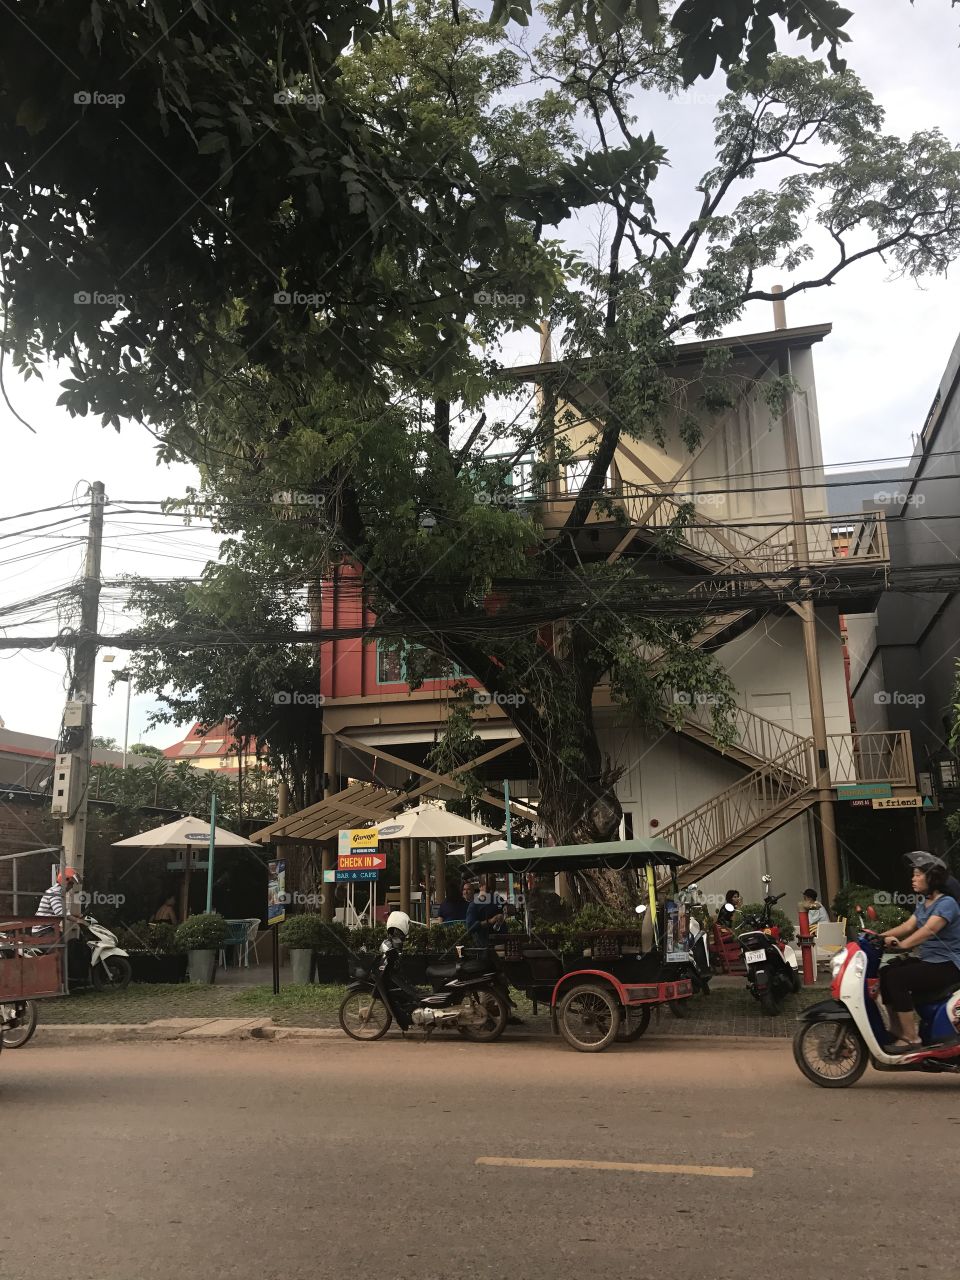 Hostel//Cambodia 